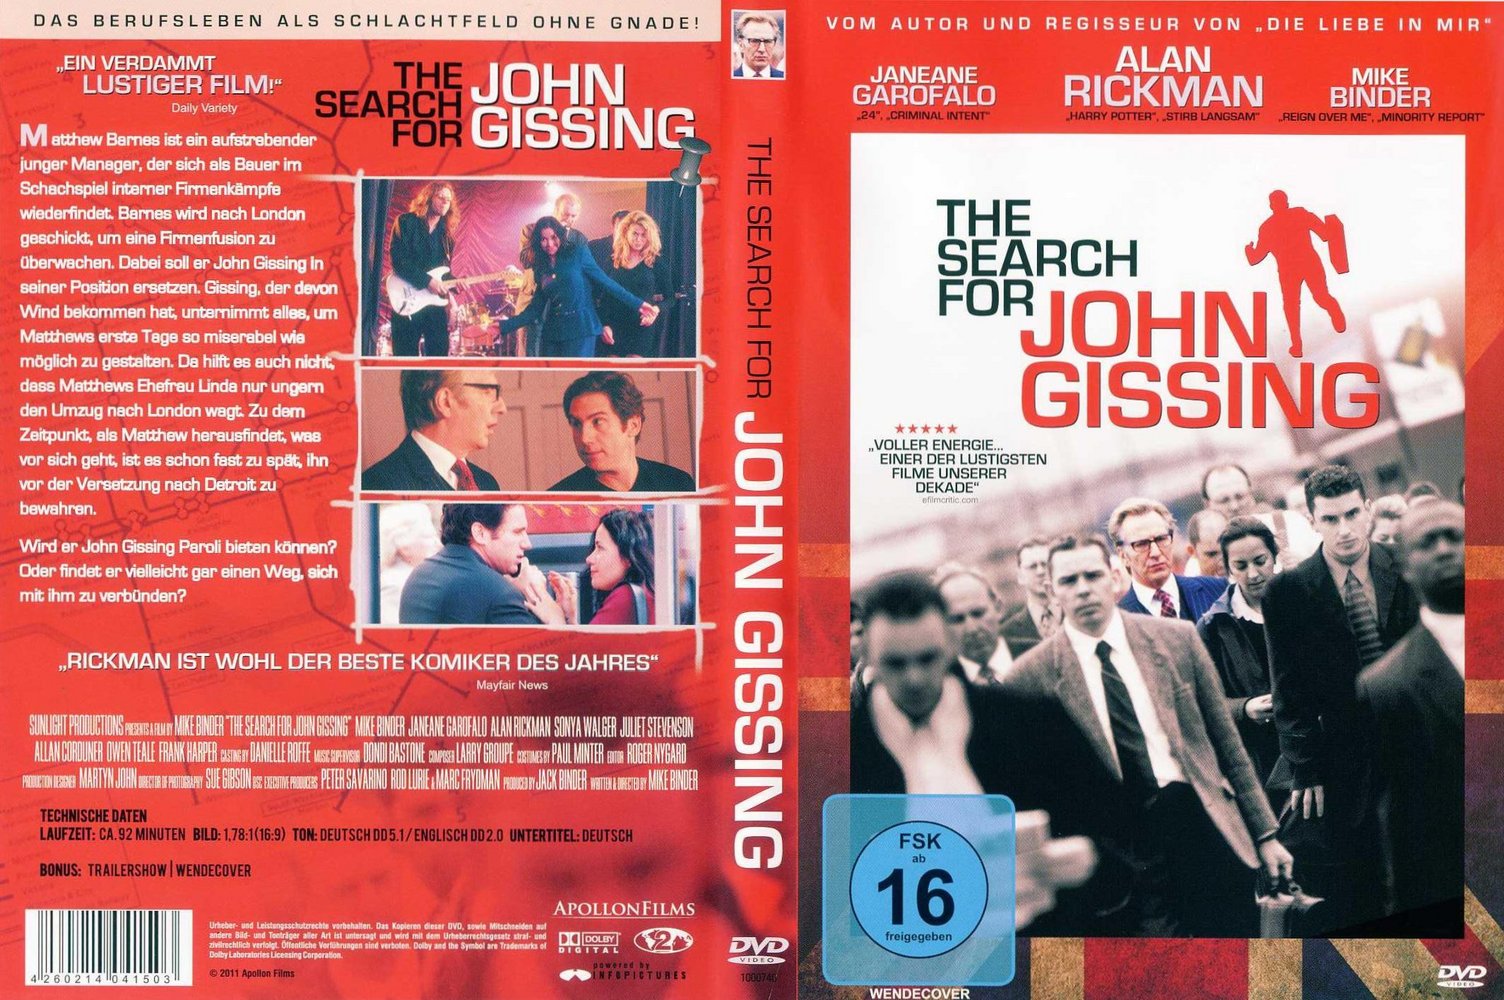 The Search for John Gissing: DVD oder Blu-ray leihen - VIDEOBUSTER.de